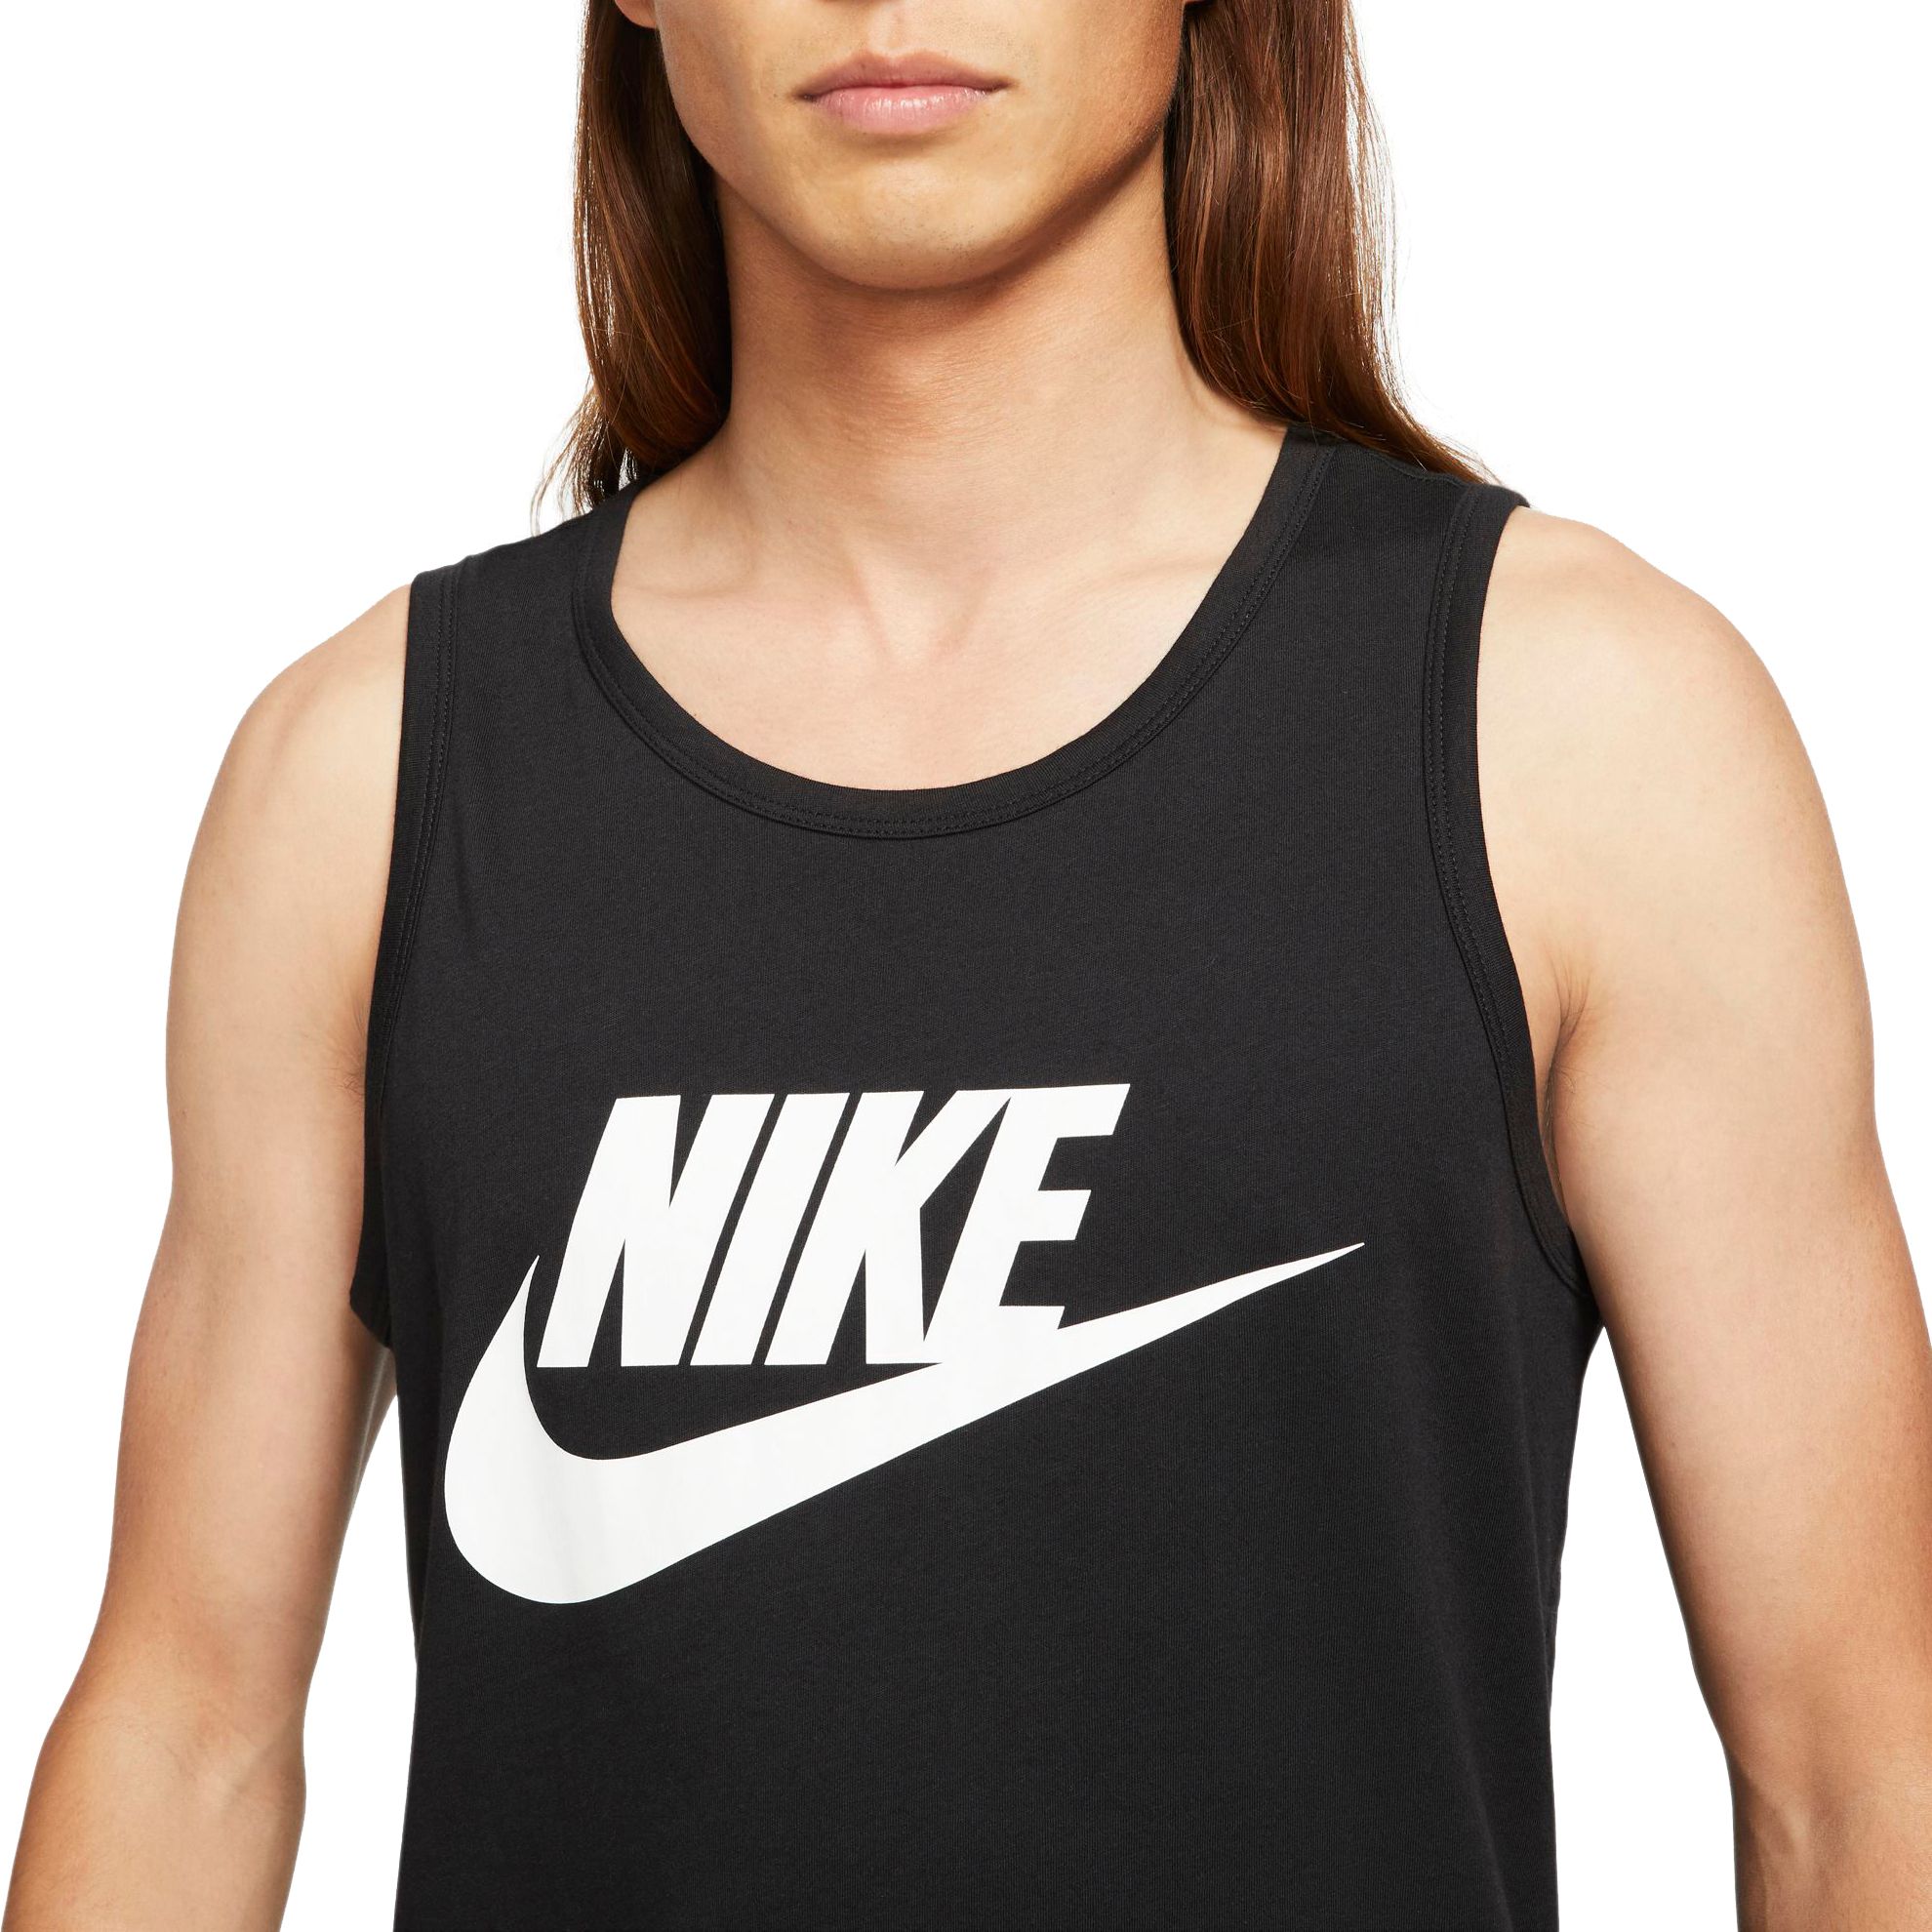 Nike Men's Sportswear Icon Futura Tank Top